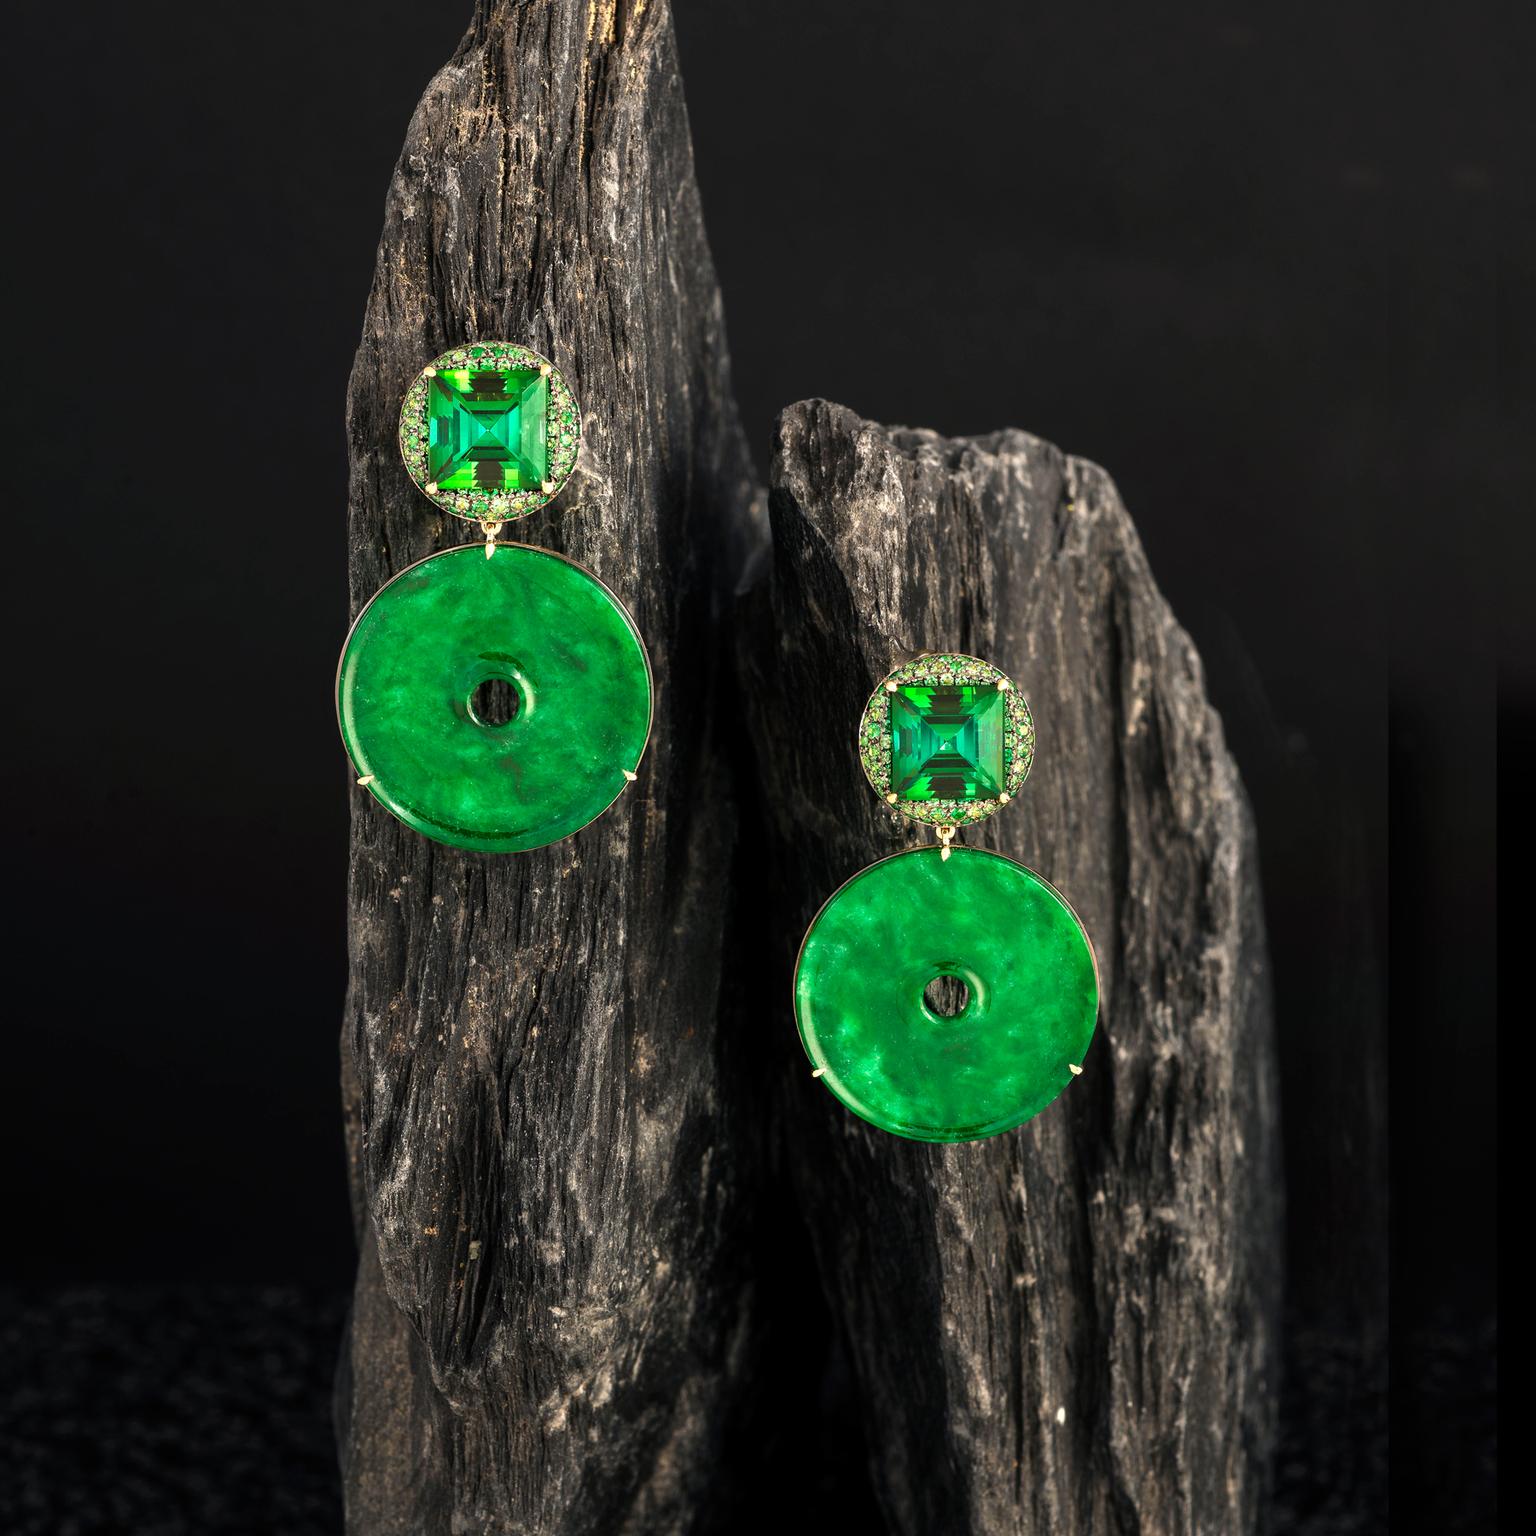 Doris Hangartner star jade earrings